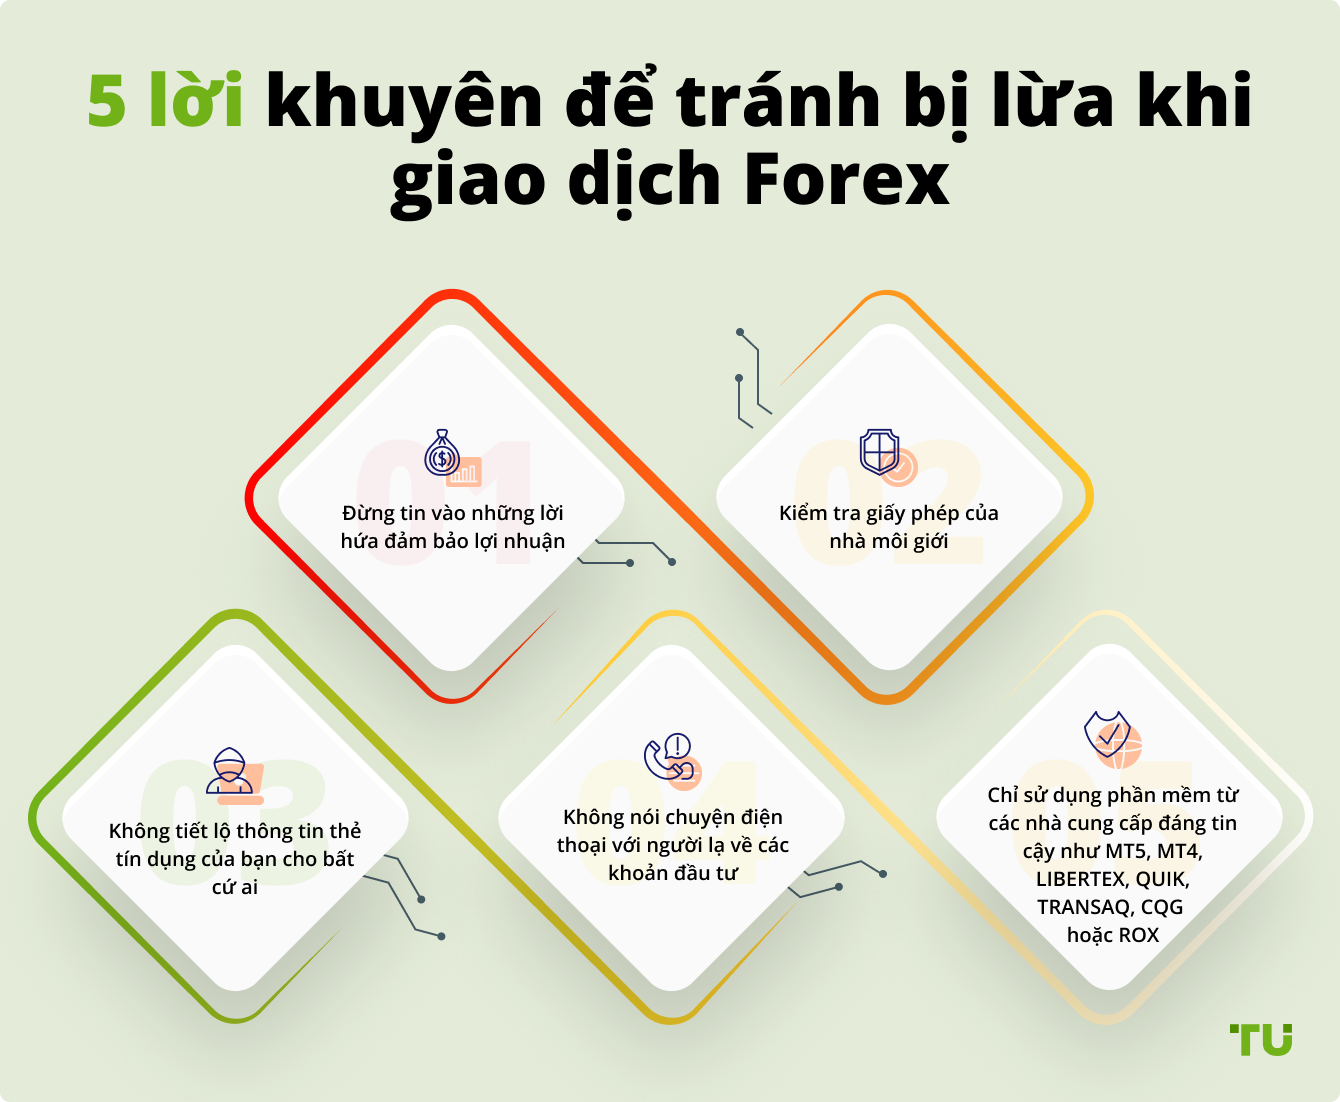 5 lời khuyên để tránh bị lừa khi giao dịch Forex